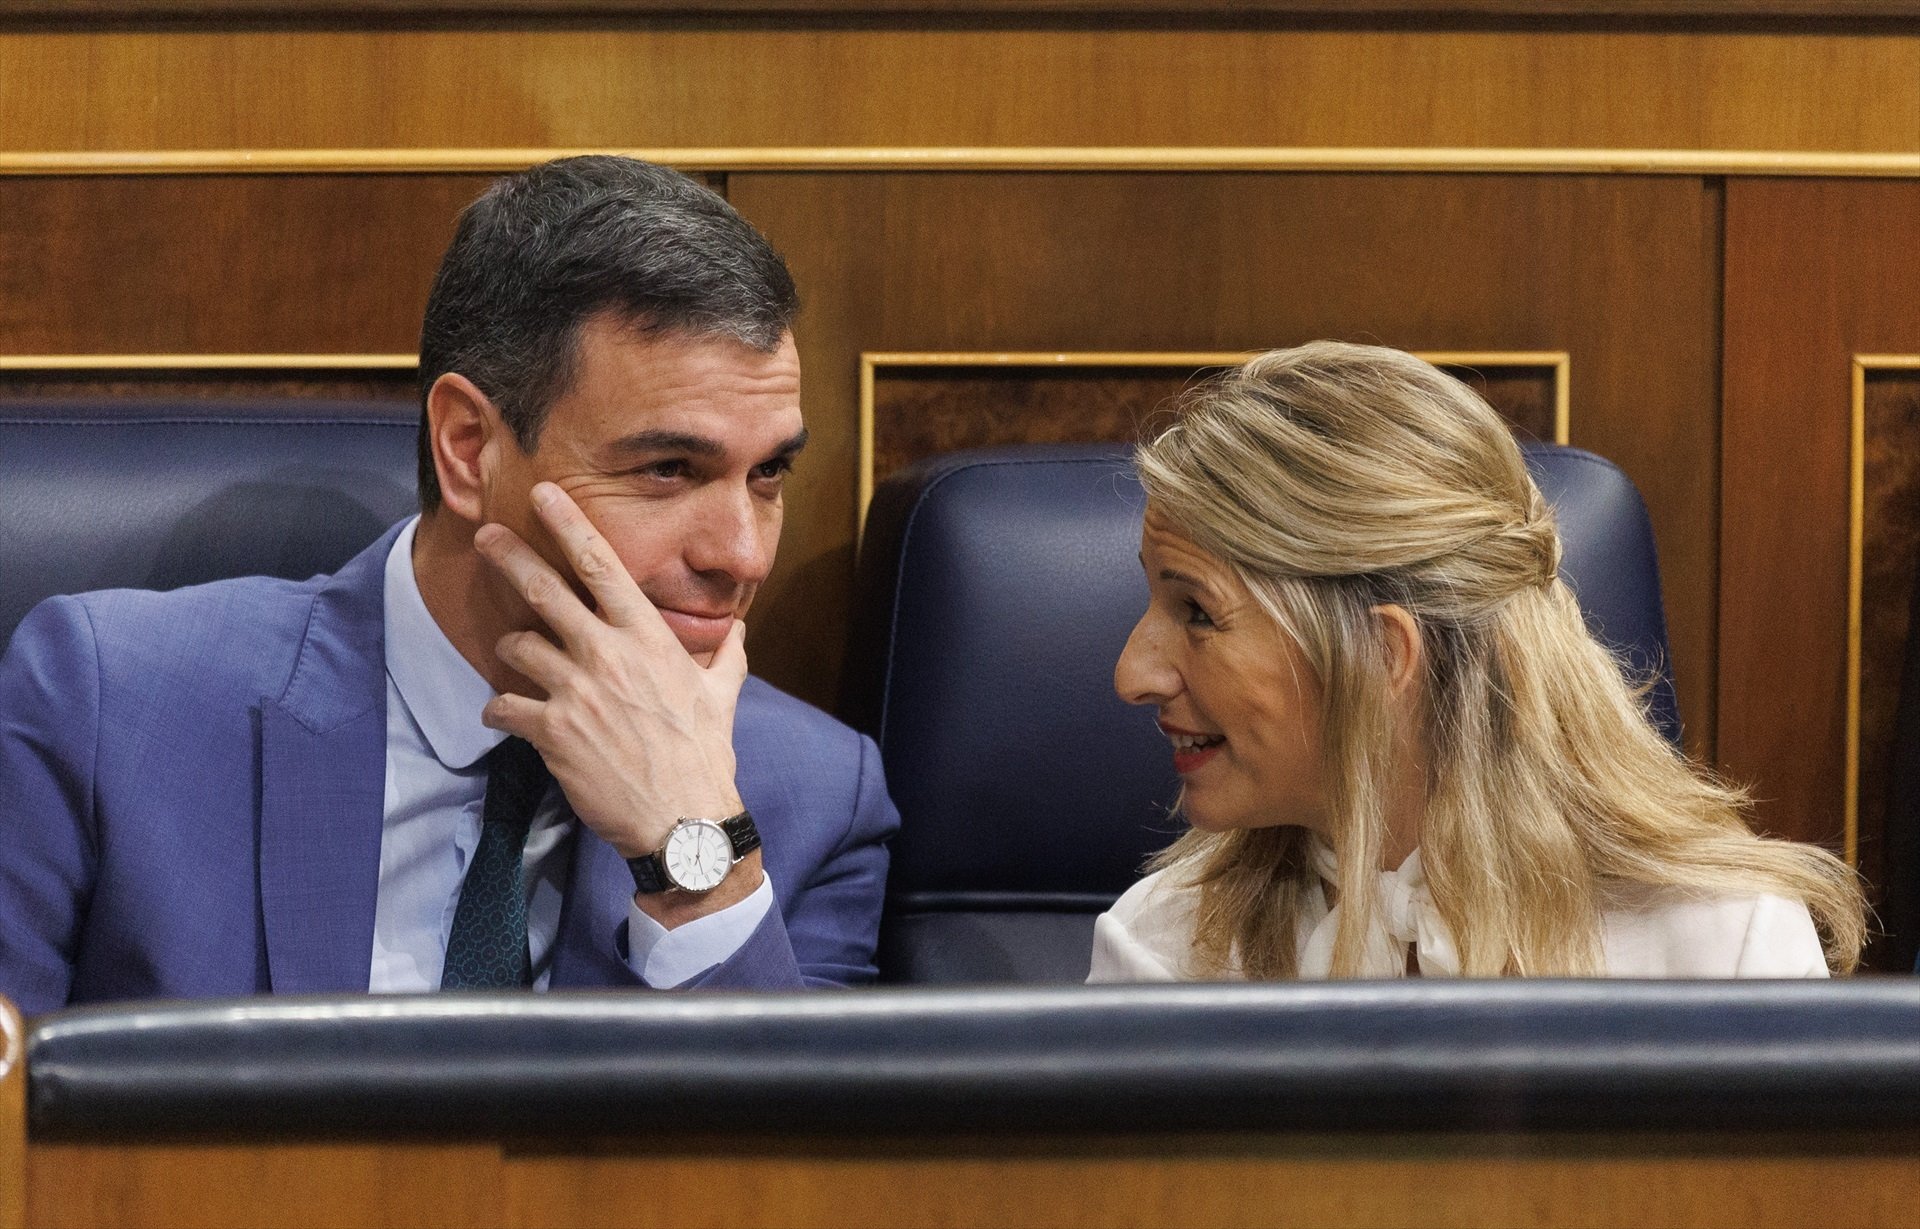 Pedro Sánchez i els seus ministres tornen a plantar la comissió CatalanGate al Parlament